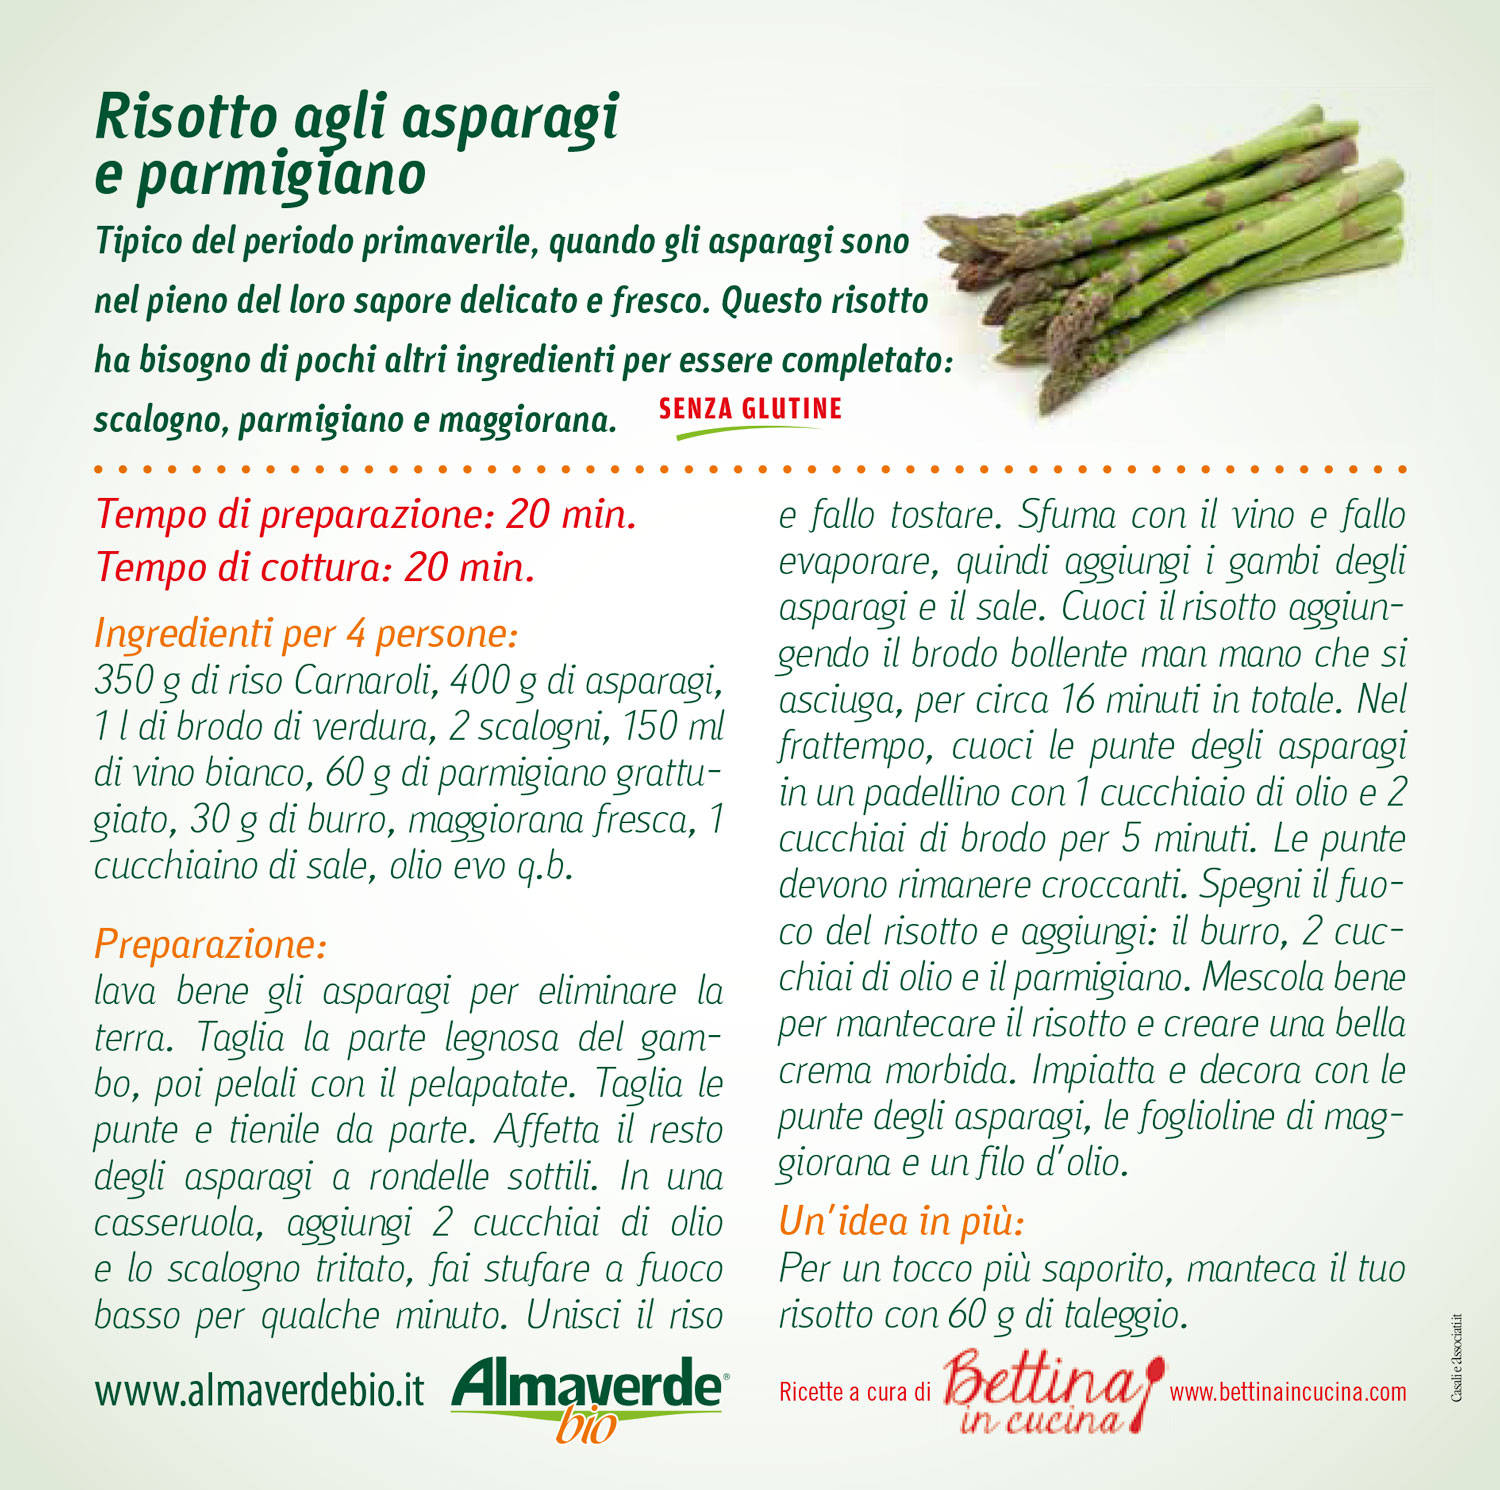 risotto asparagi e parmigiano ricetta almaverde bio